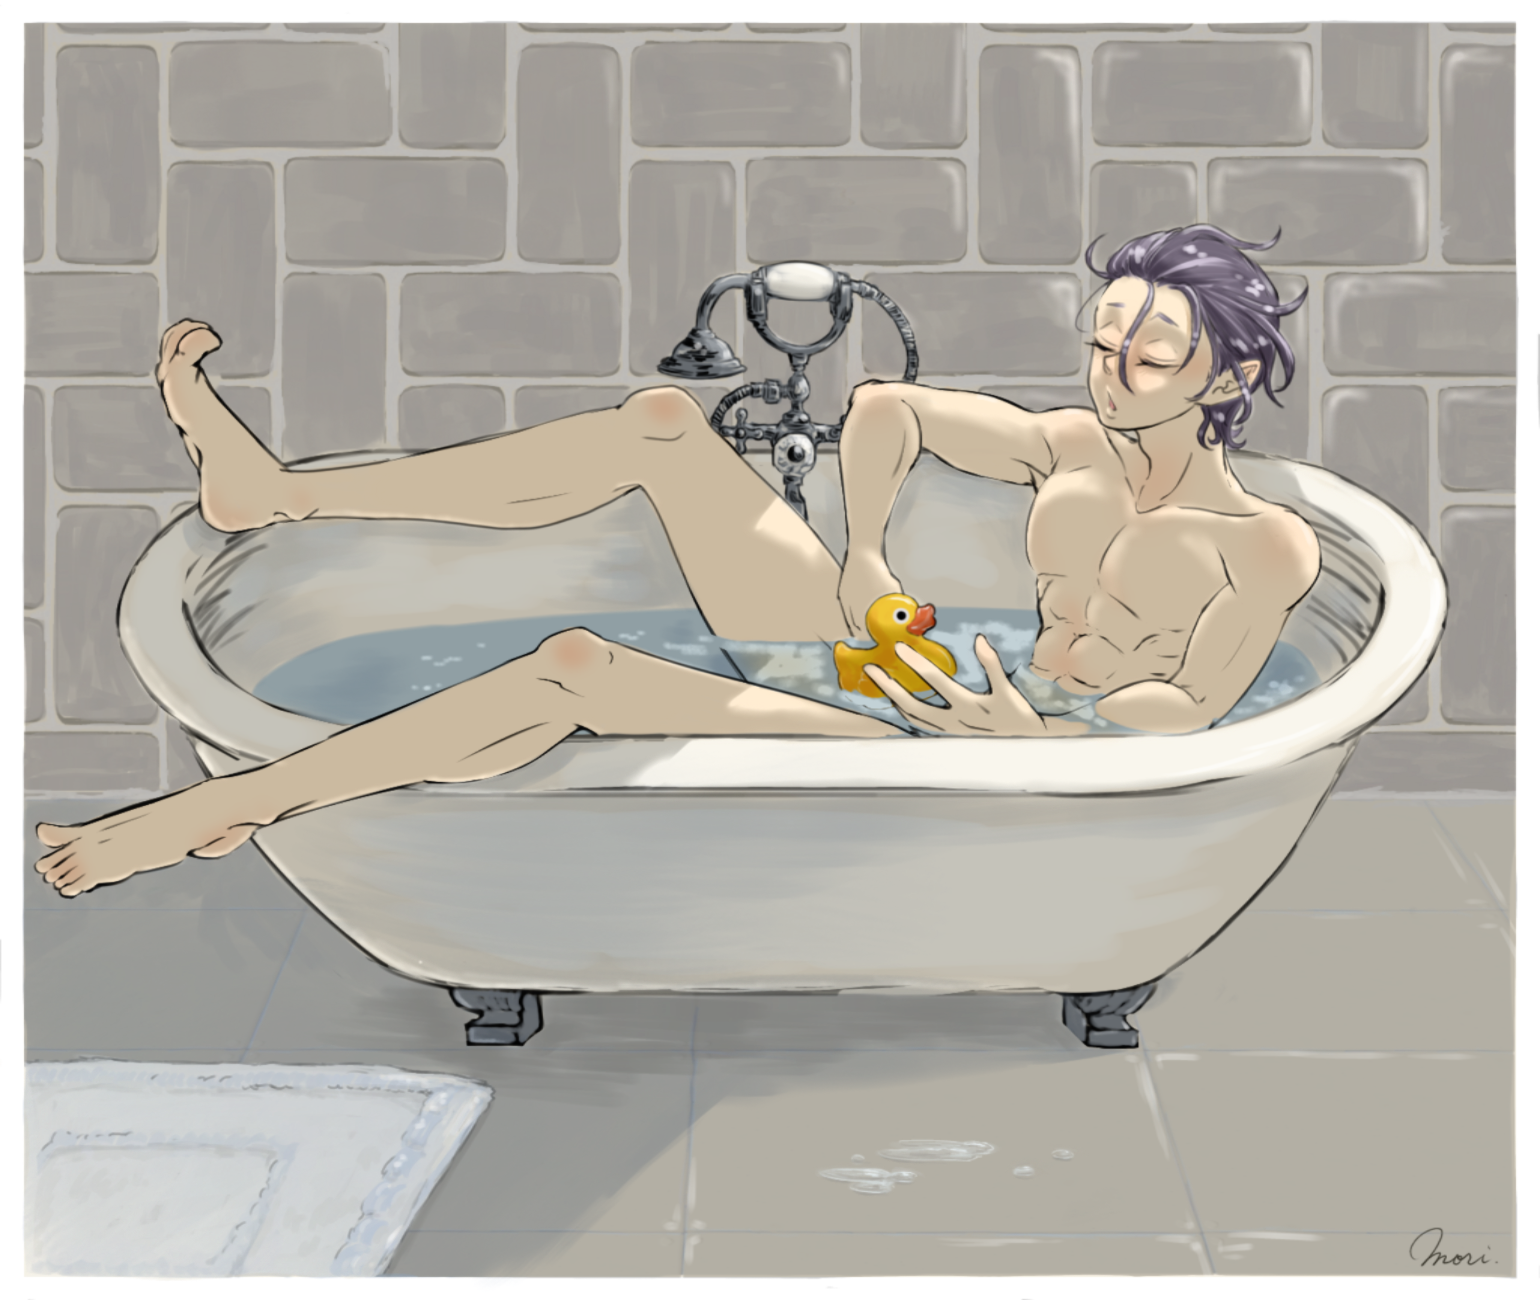 いい風呂の日 by 森 久都